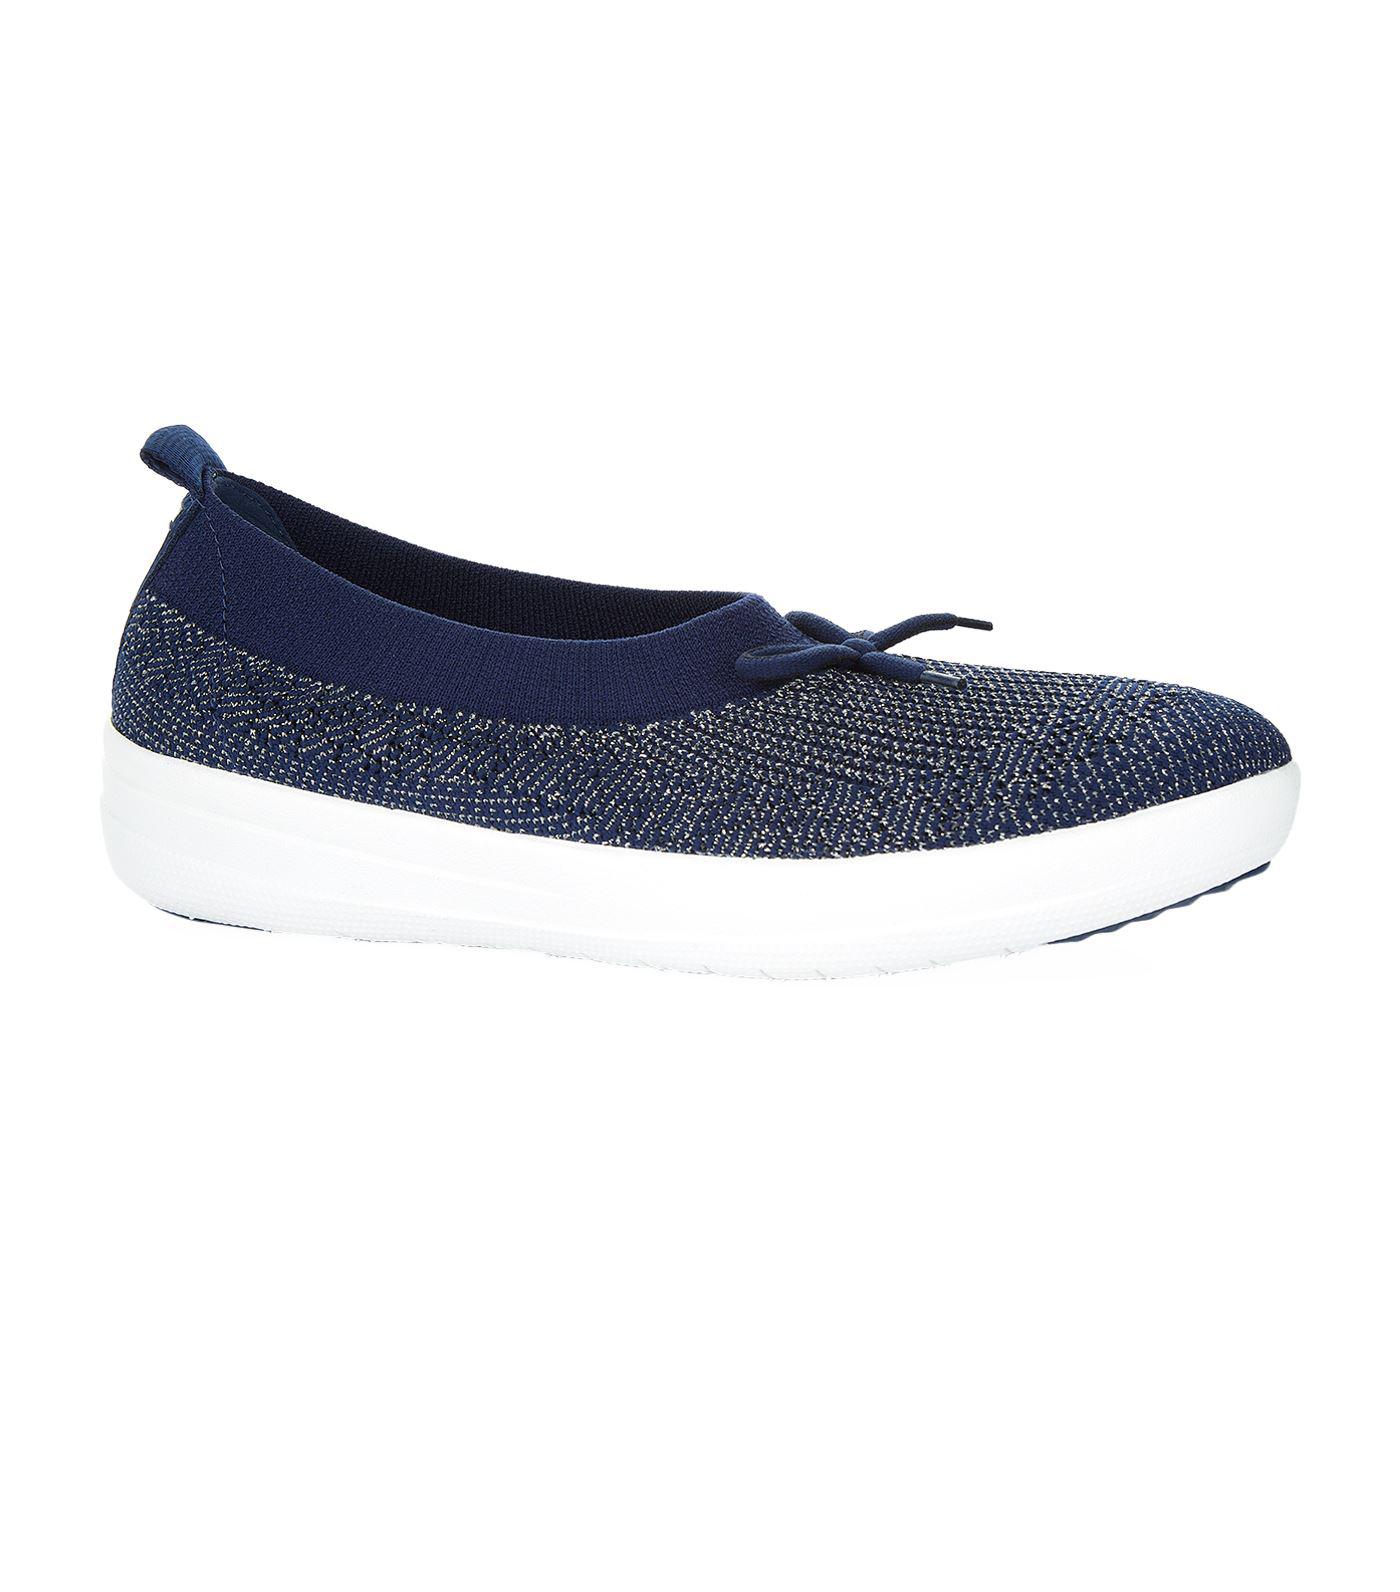 Lyst - Fitflop Uberknit Ballerina Shoes in Blue